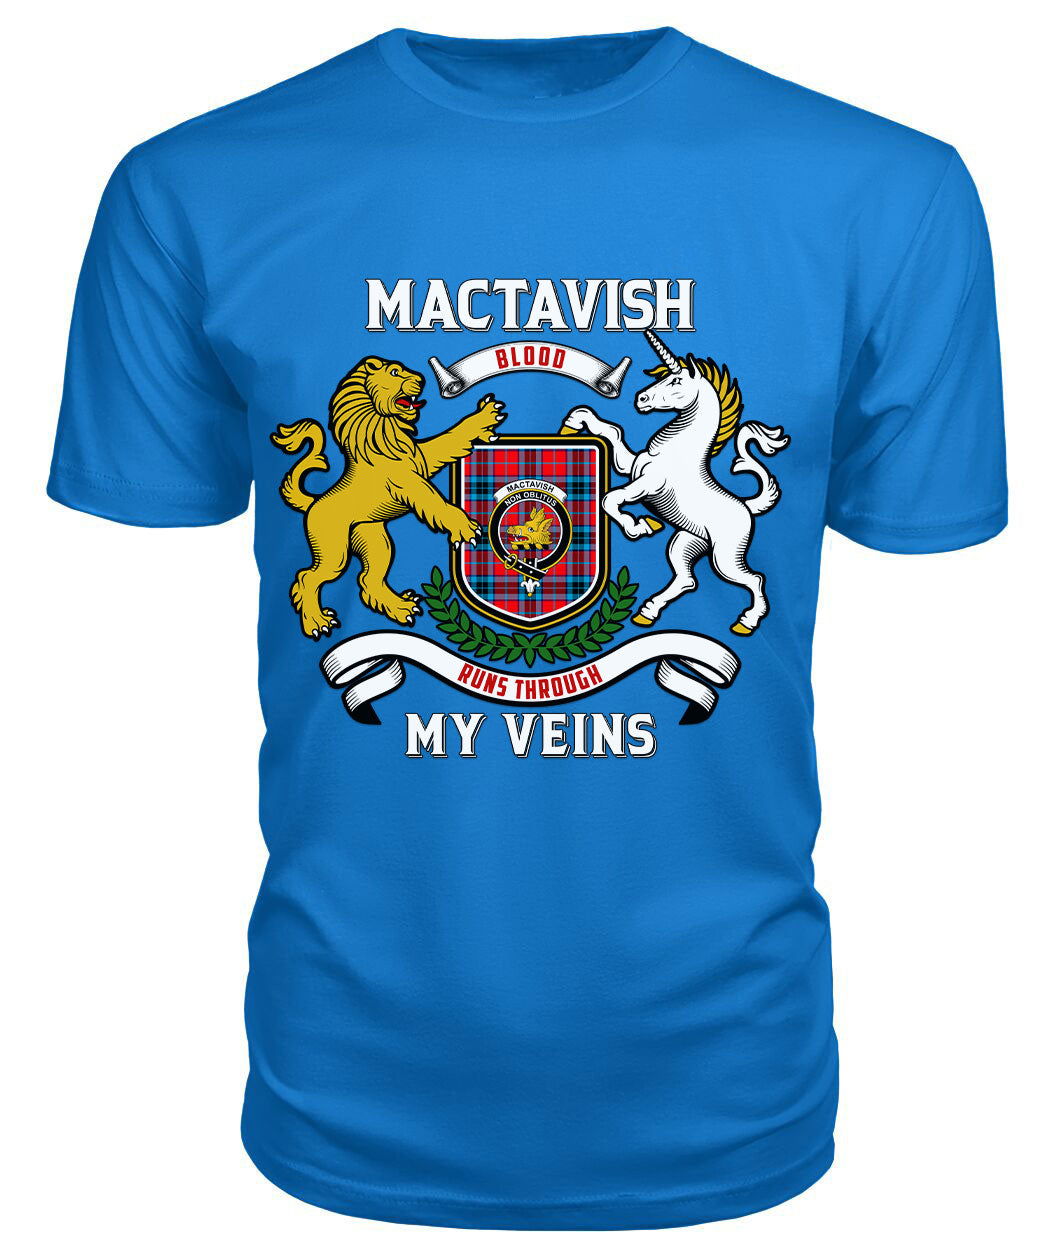 MacTavish Modern Tartan Crest 2D T-shirt - Blood Runs Through My Veins Style